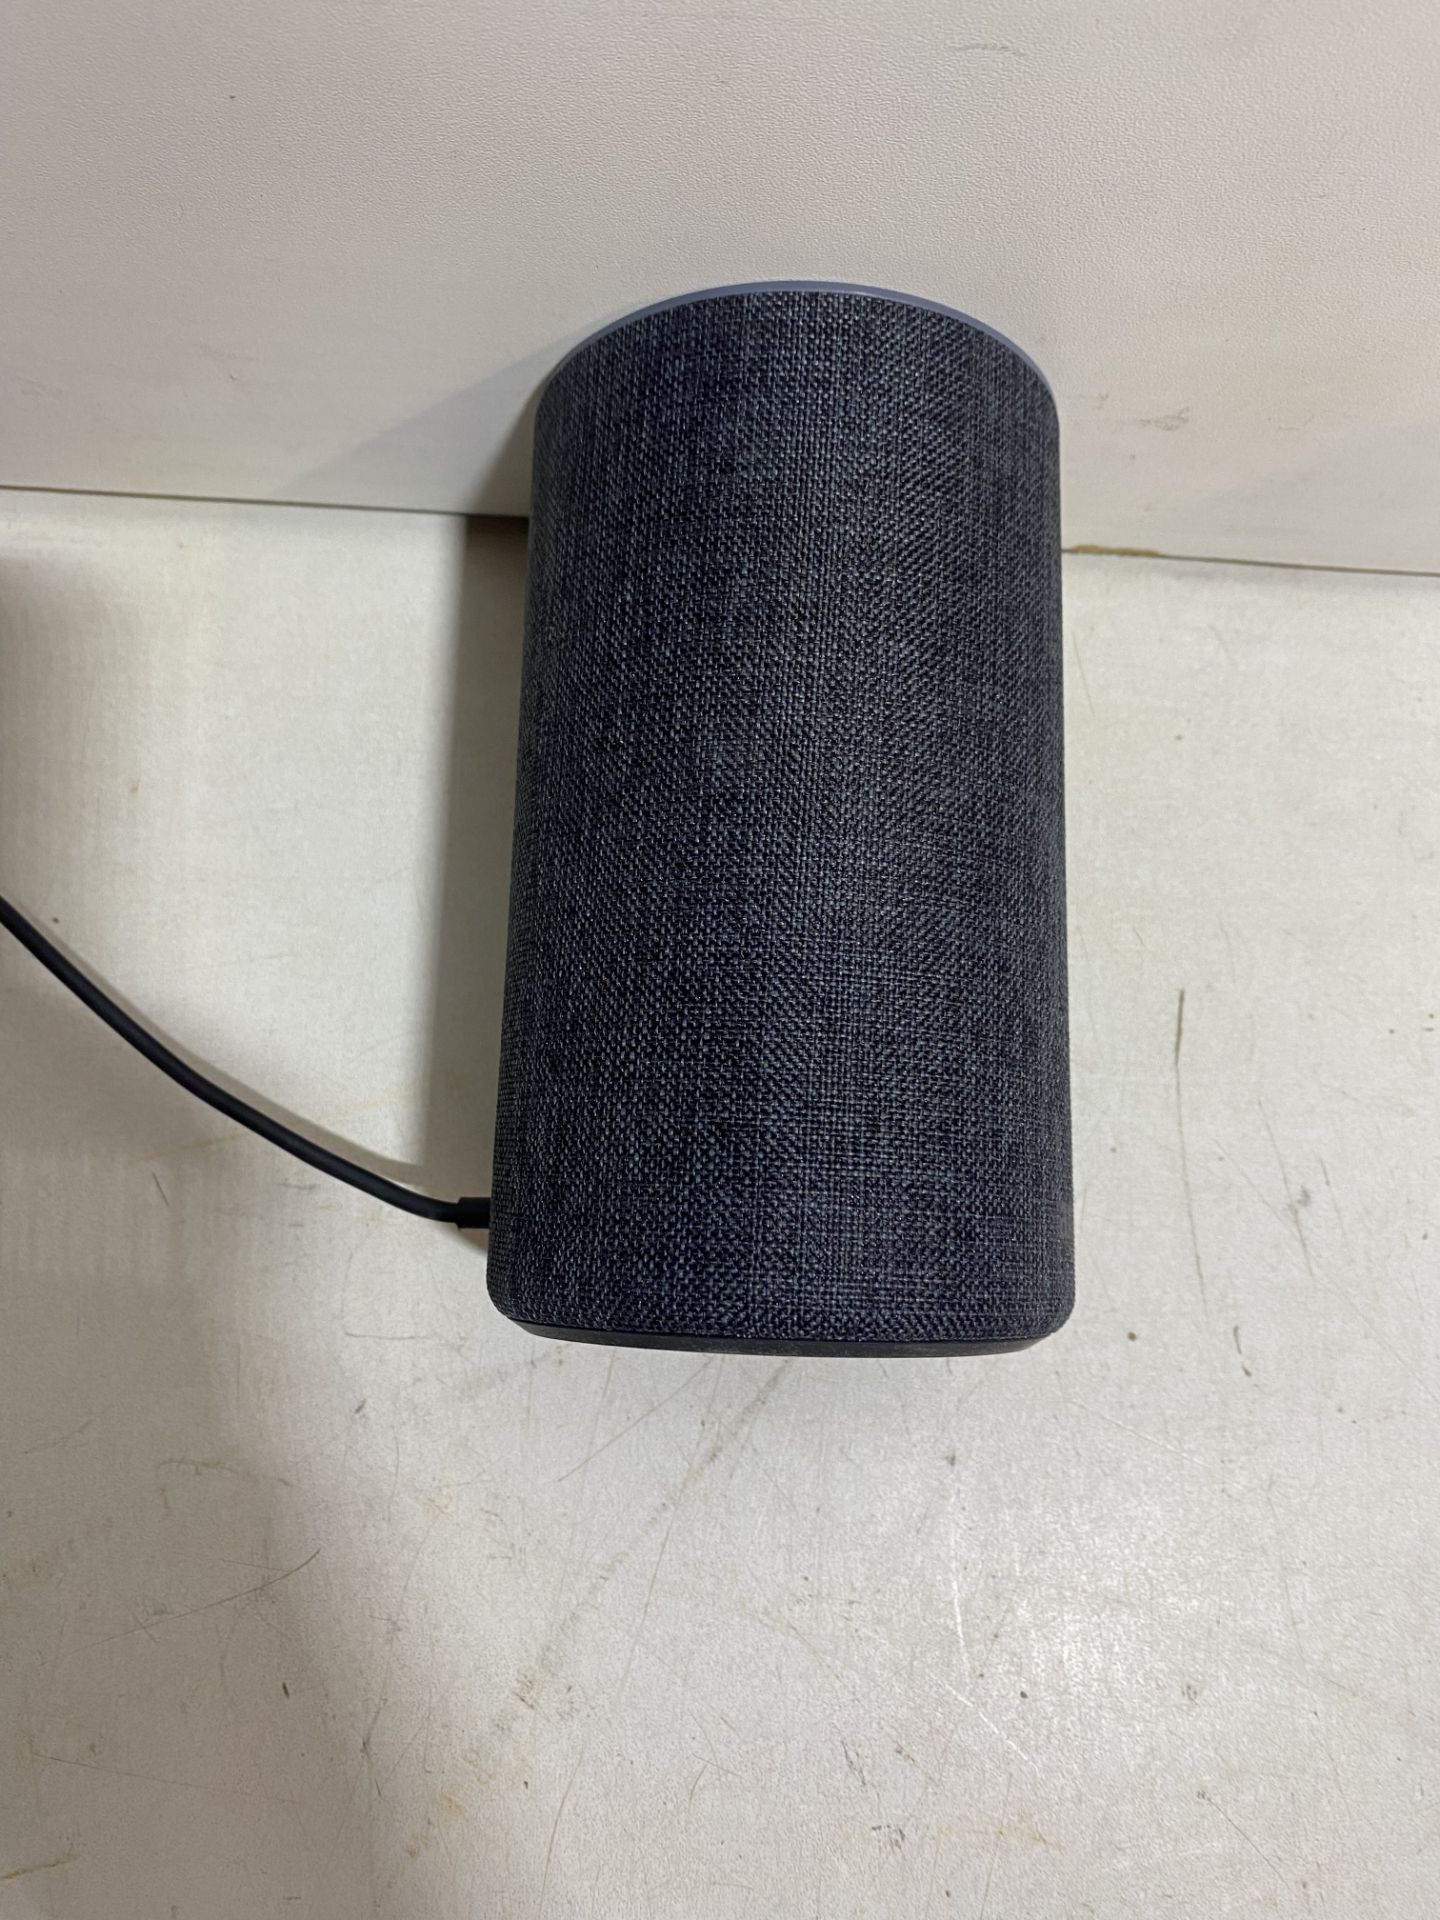 Amazon Echo Smart Speaker With Alexa - Image 4 of 6